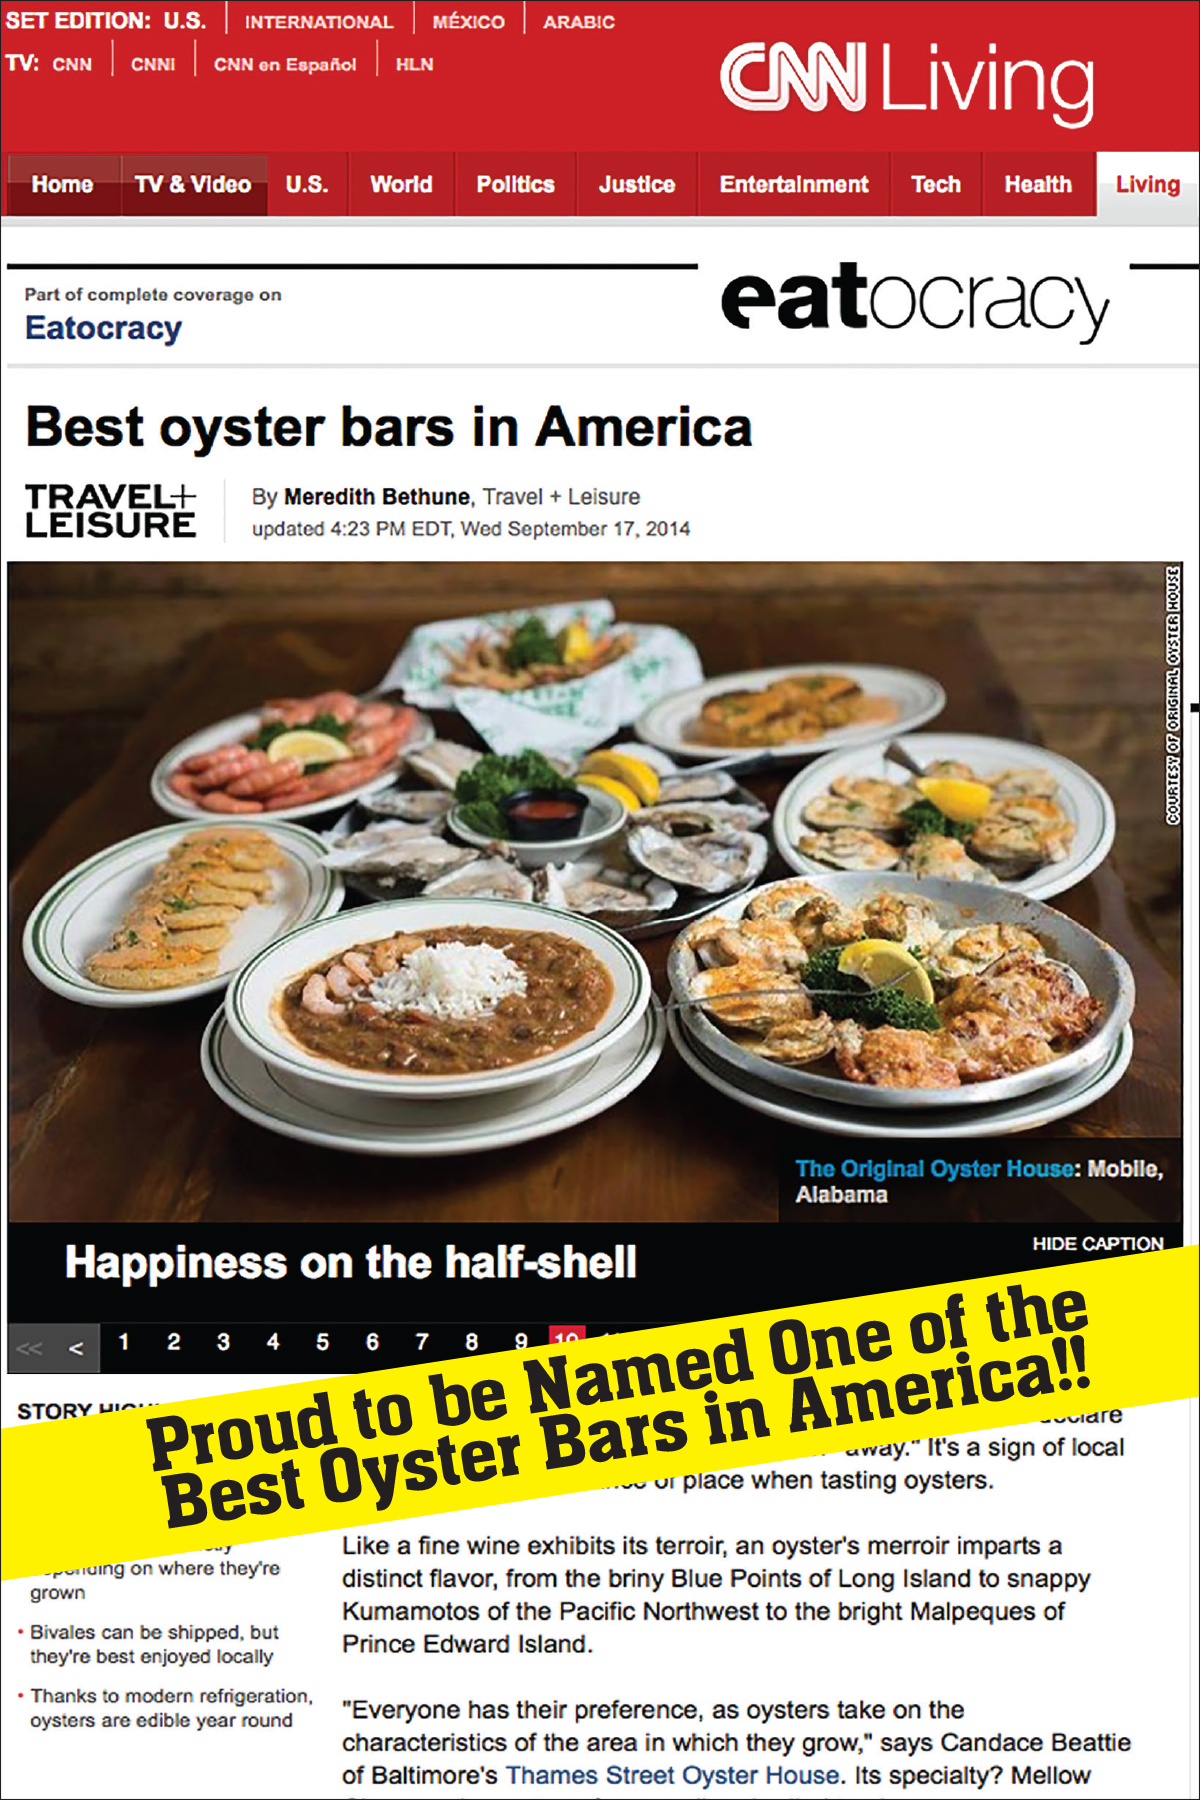 CNN Names Original Oyster House as Best Oyster Bar